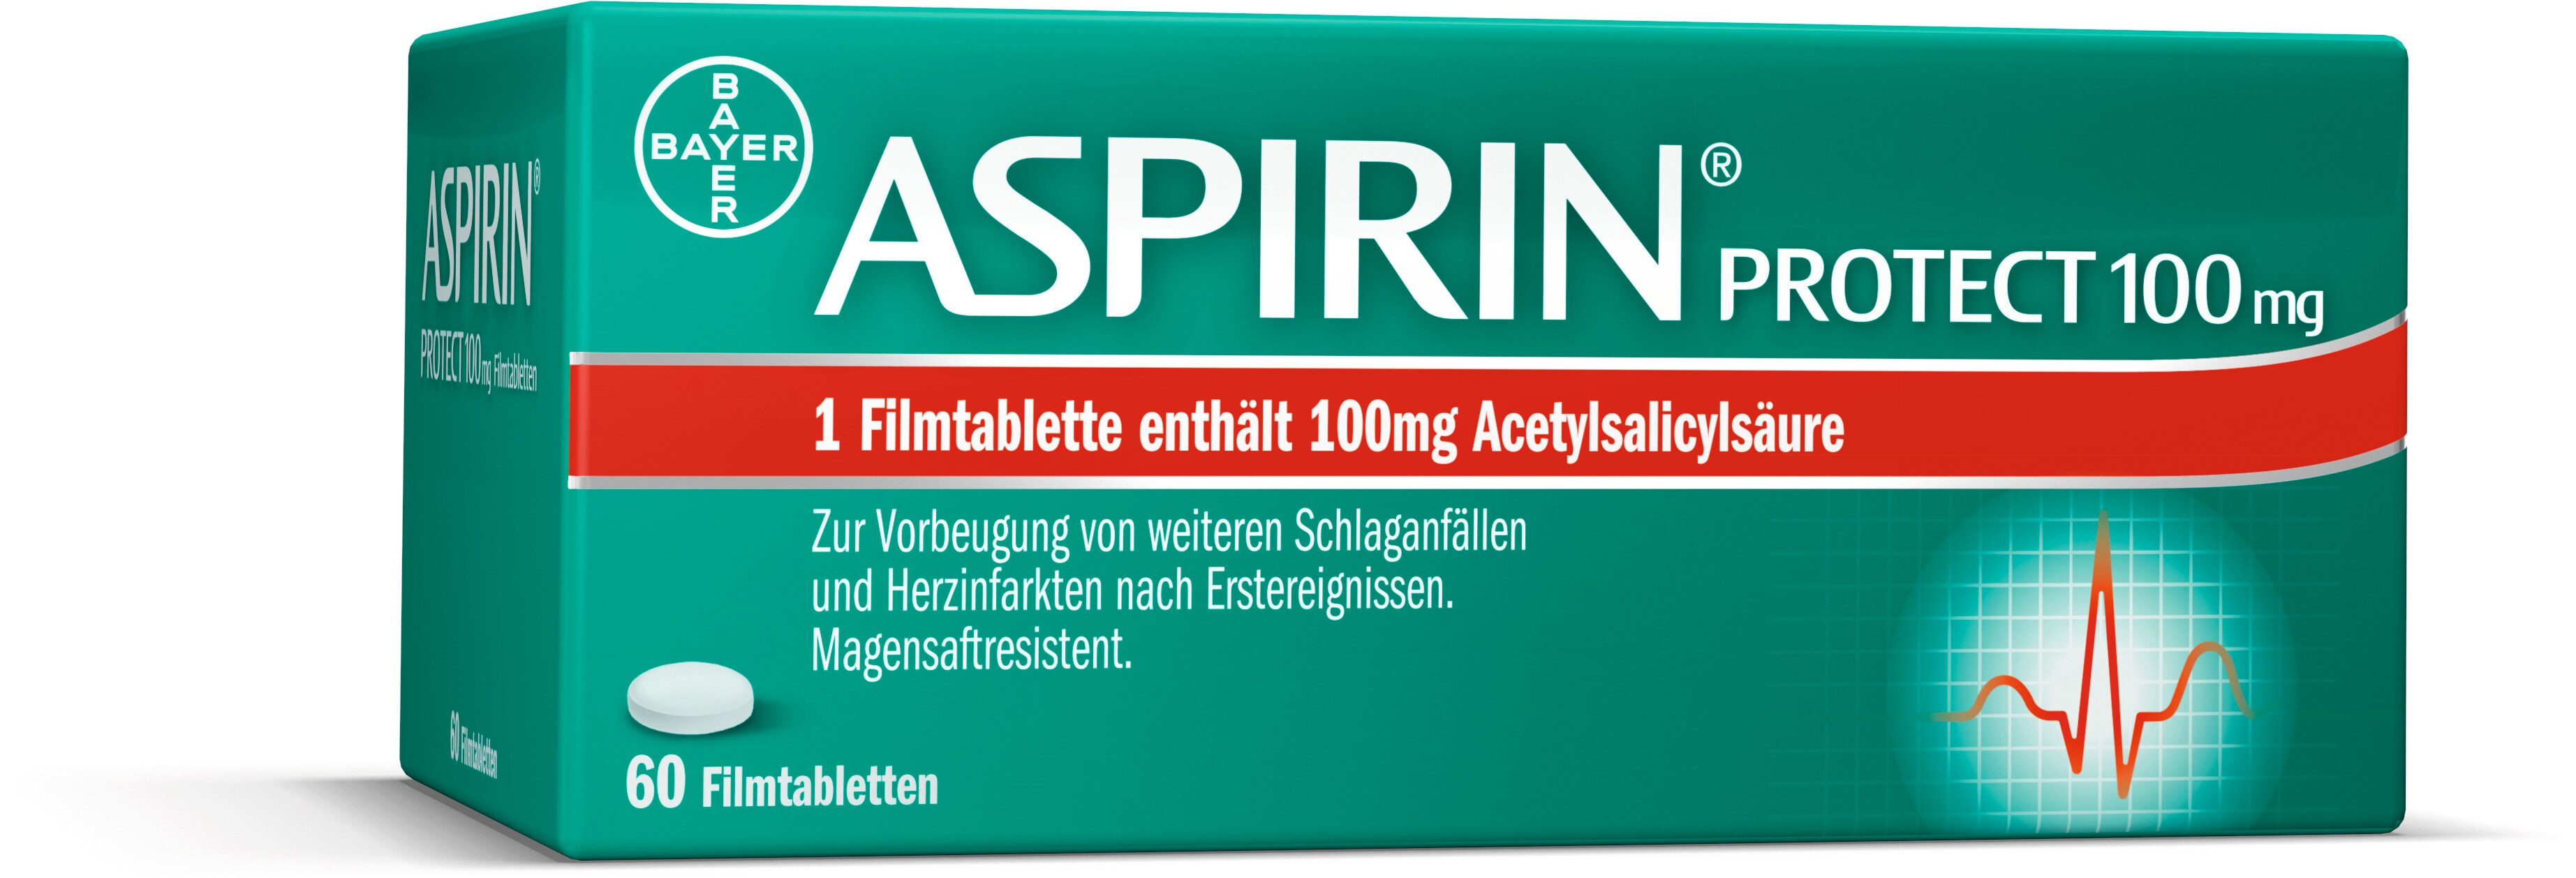 Aspirin Protect 100 mg - Filmtabletten